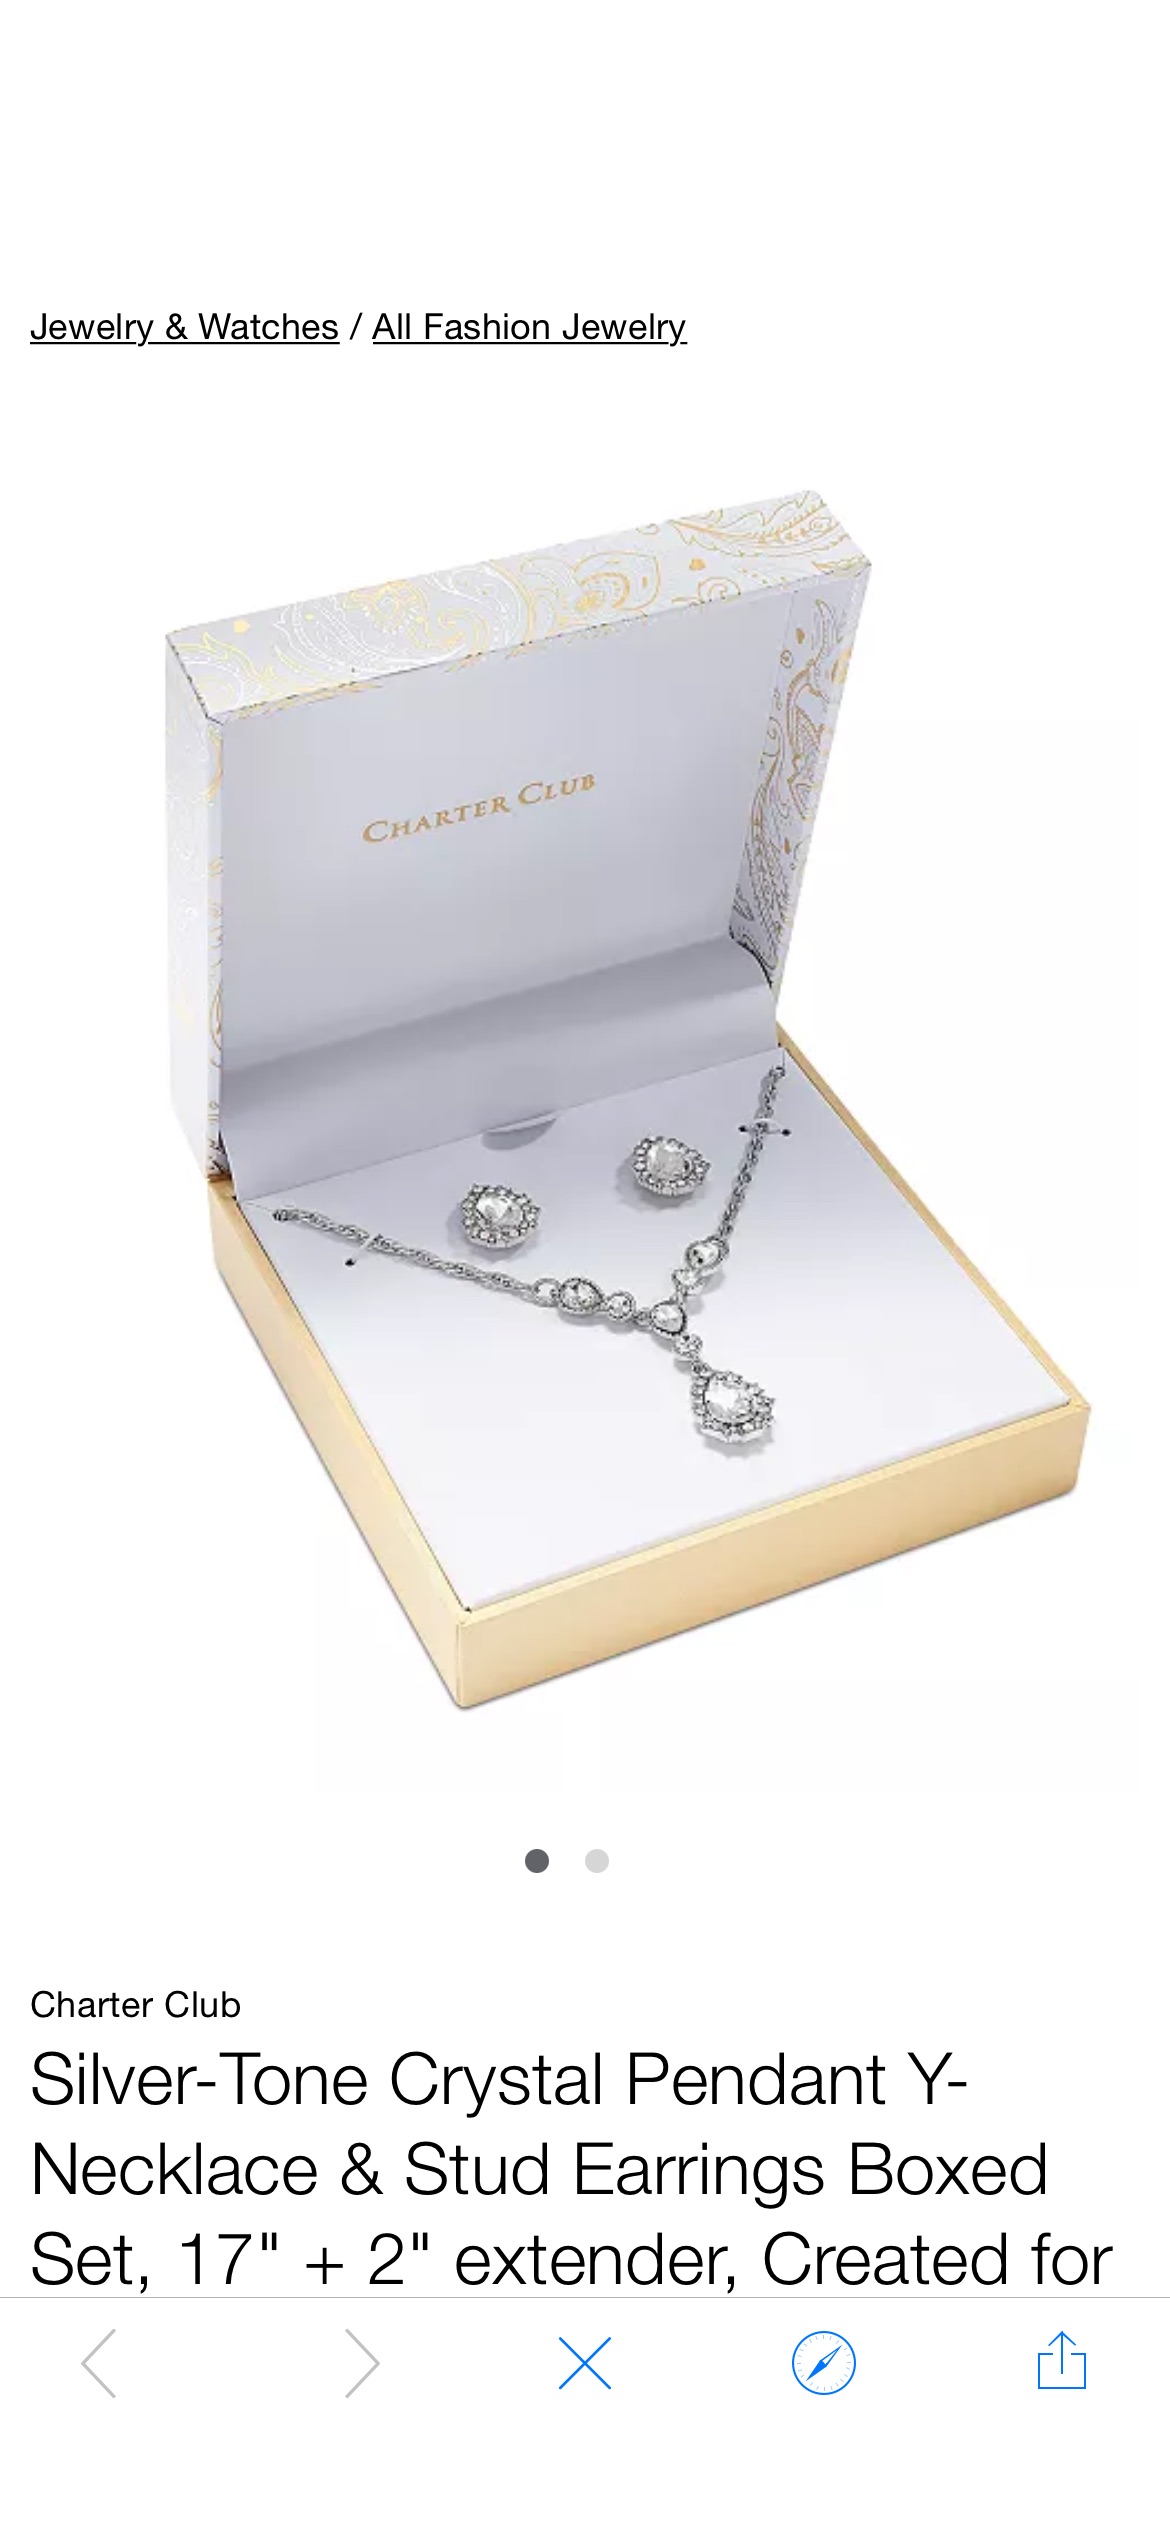 项链耳坠套装Charter Club Silver-Tone Crystal Pendant Y-Necklace & Stud Earrings Boxed Set, 17" + 2" extender, Created for Macy's & Reviews - All Fashion Jewelry - Jewelry & Watches - Macy's